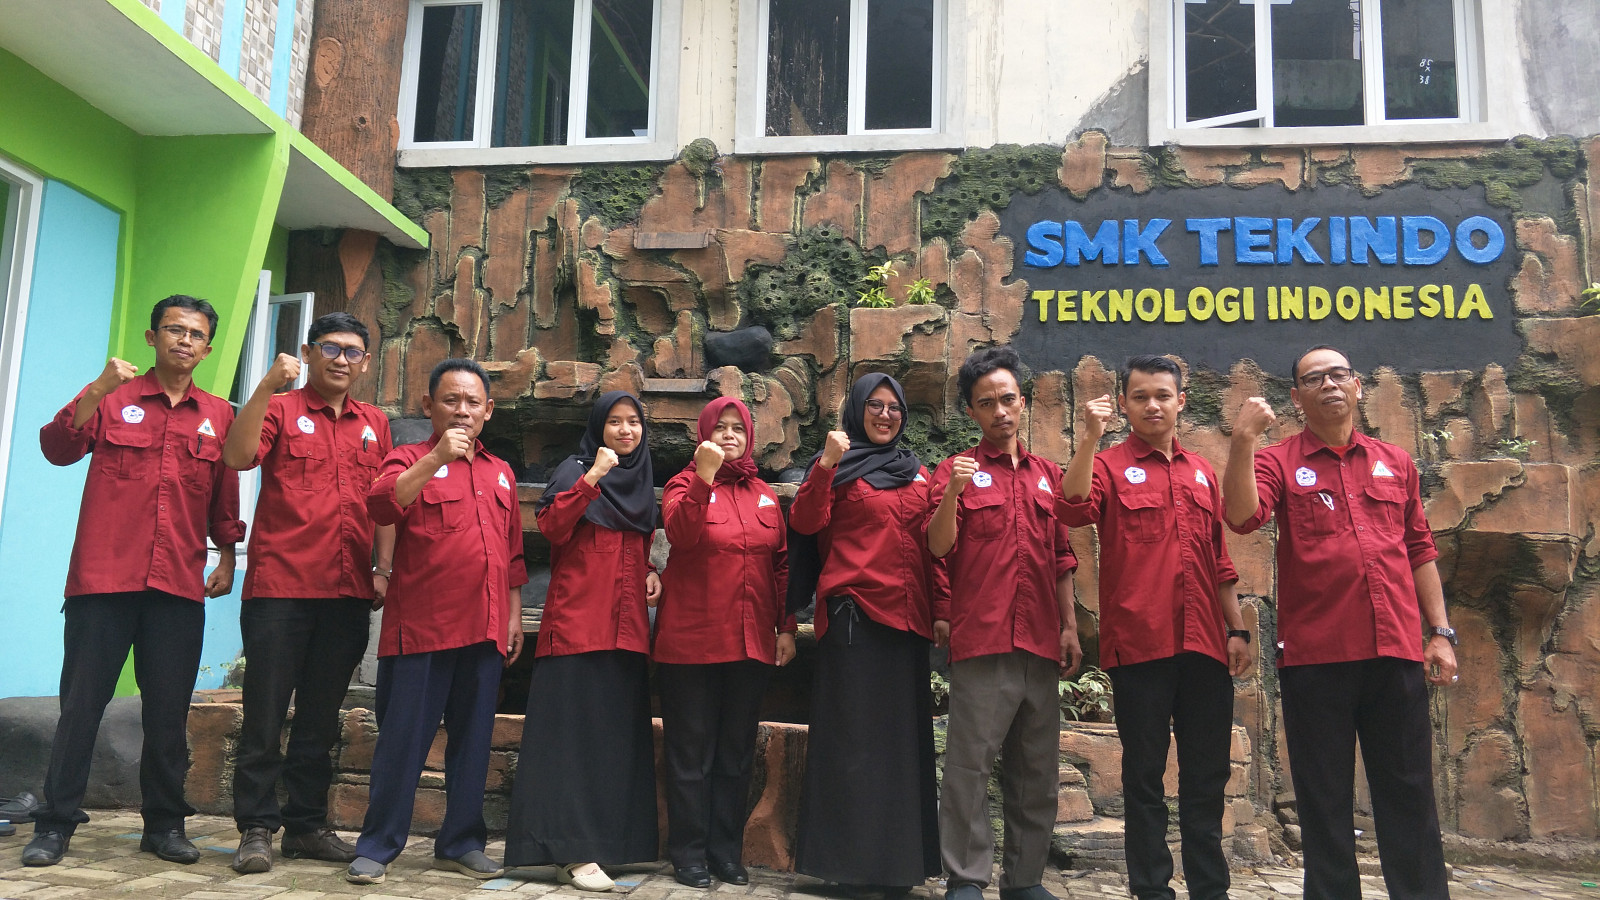 Foto SMPS  Teknologi Indonesia, Kab. Bogor